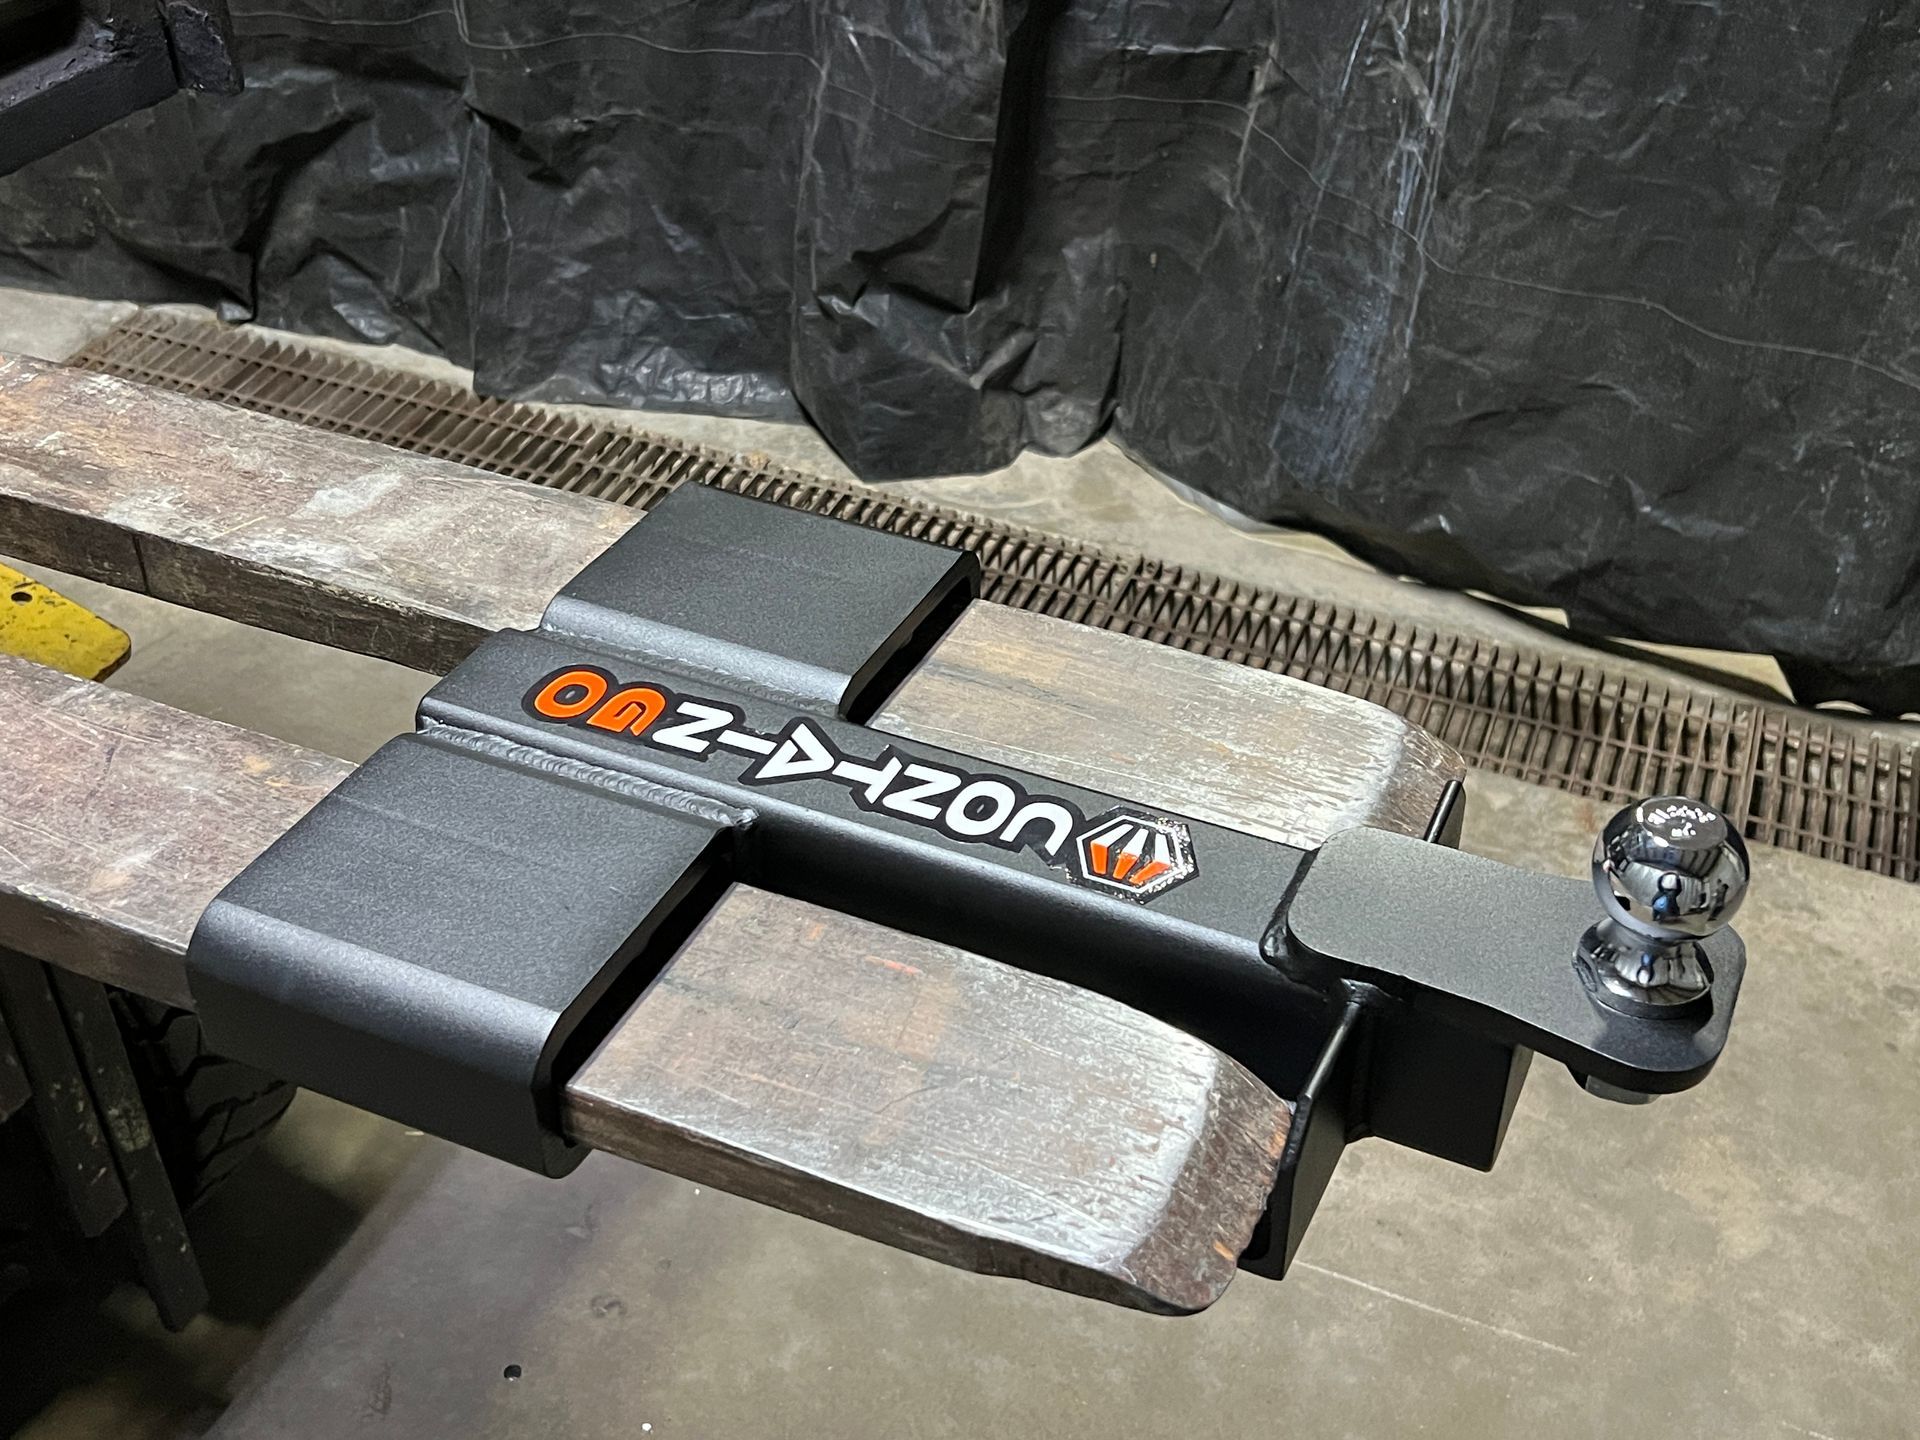 forklift attachment mounted on forklift forks